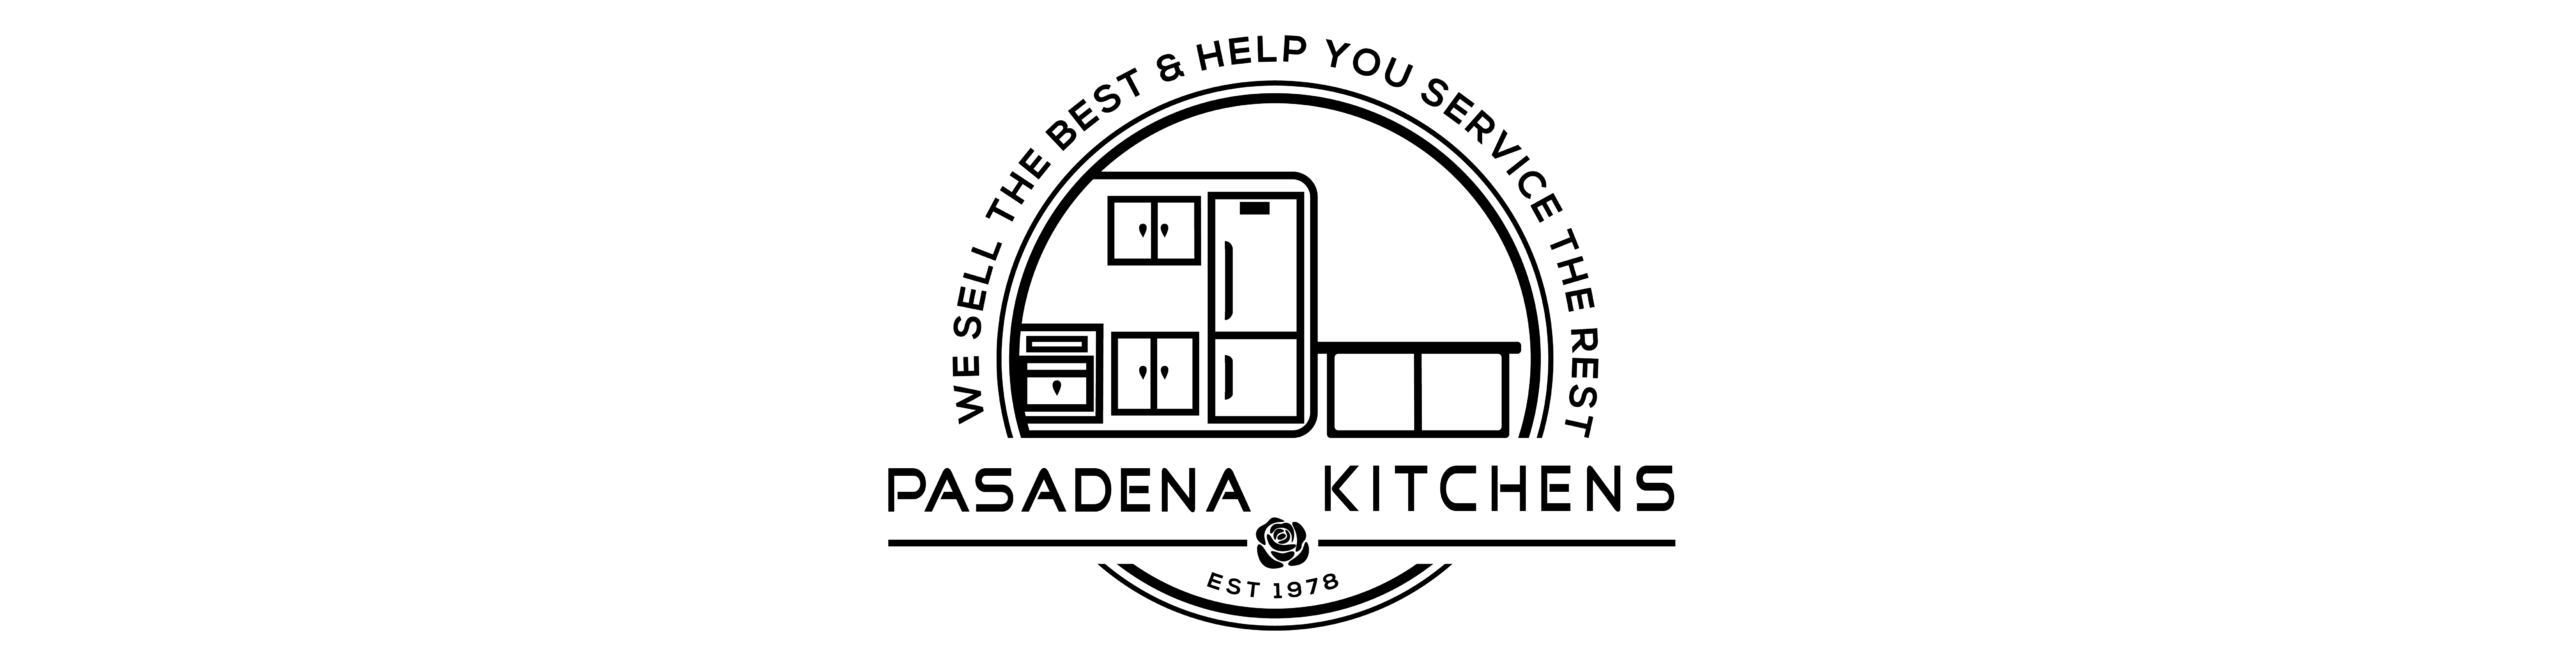 Pasadena Kitchens, Inc.